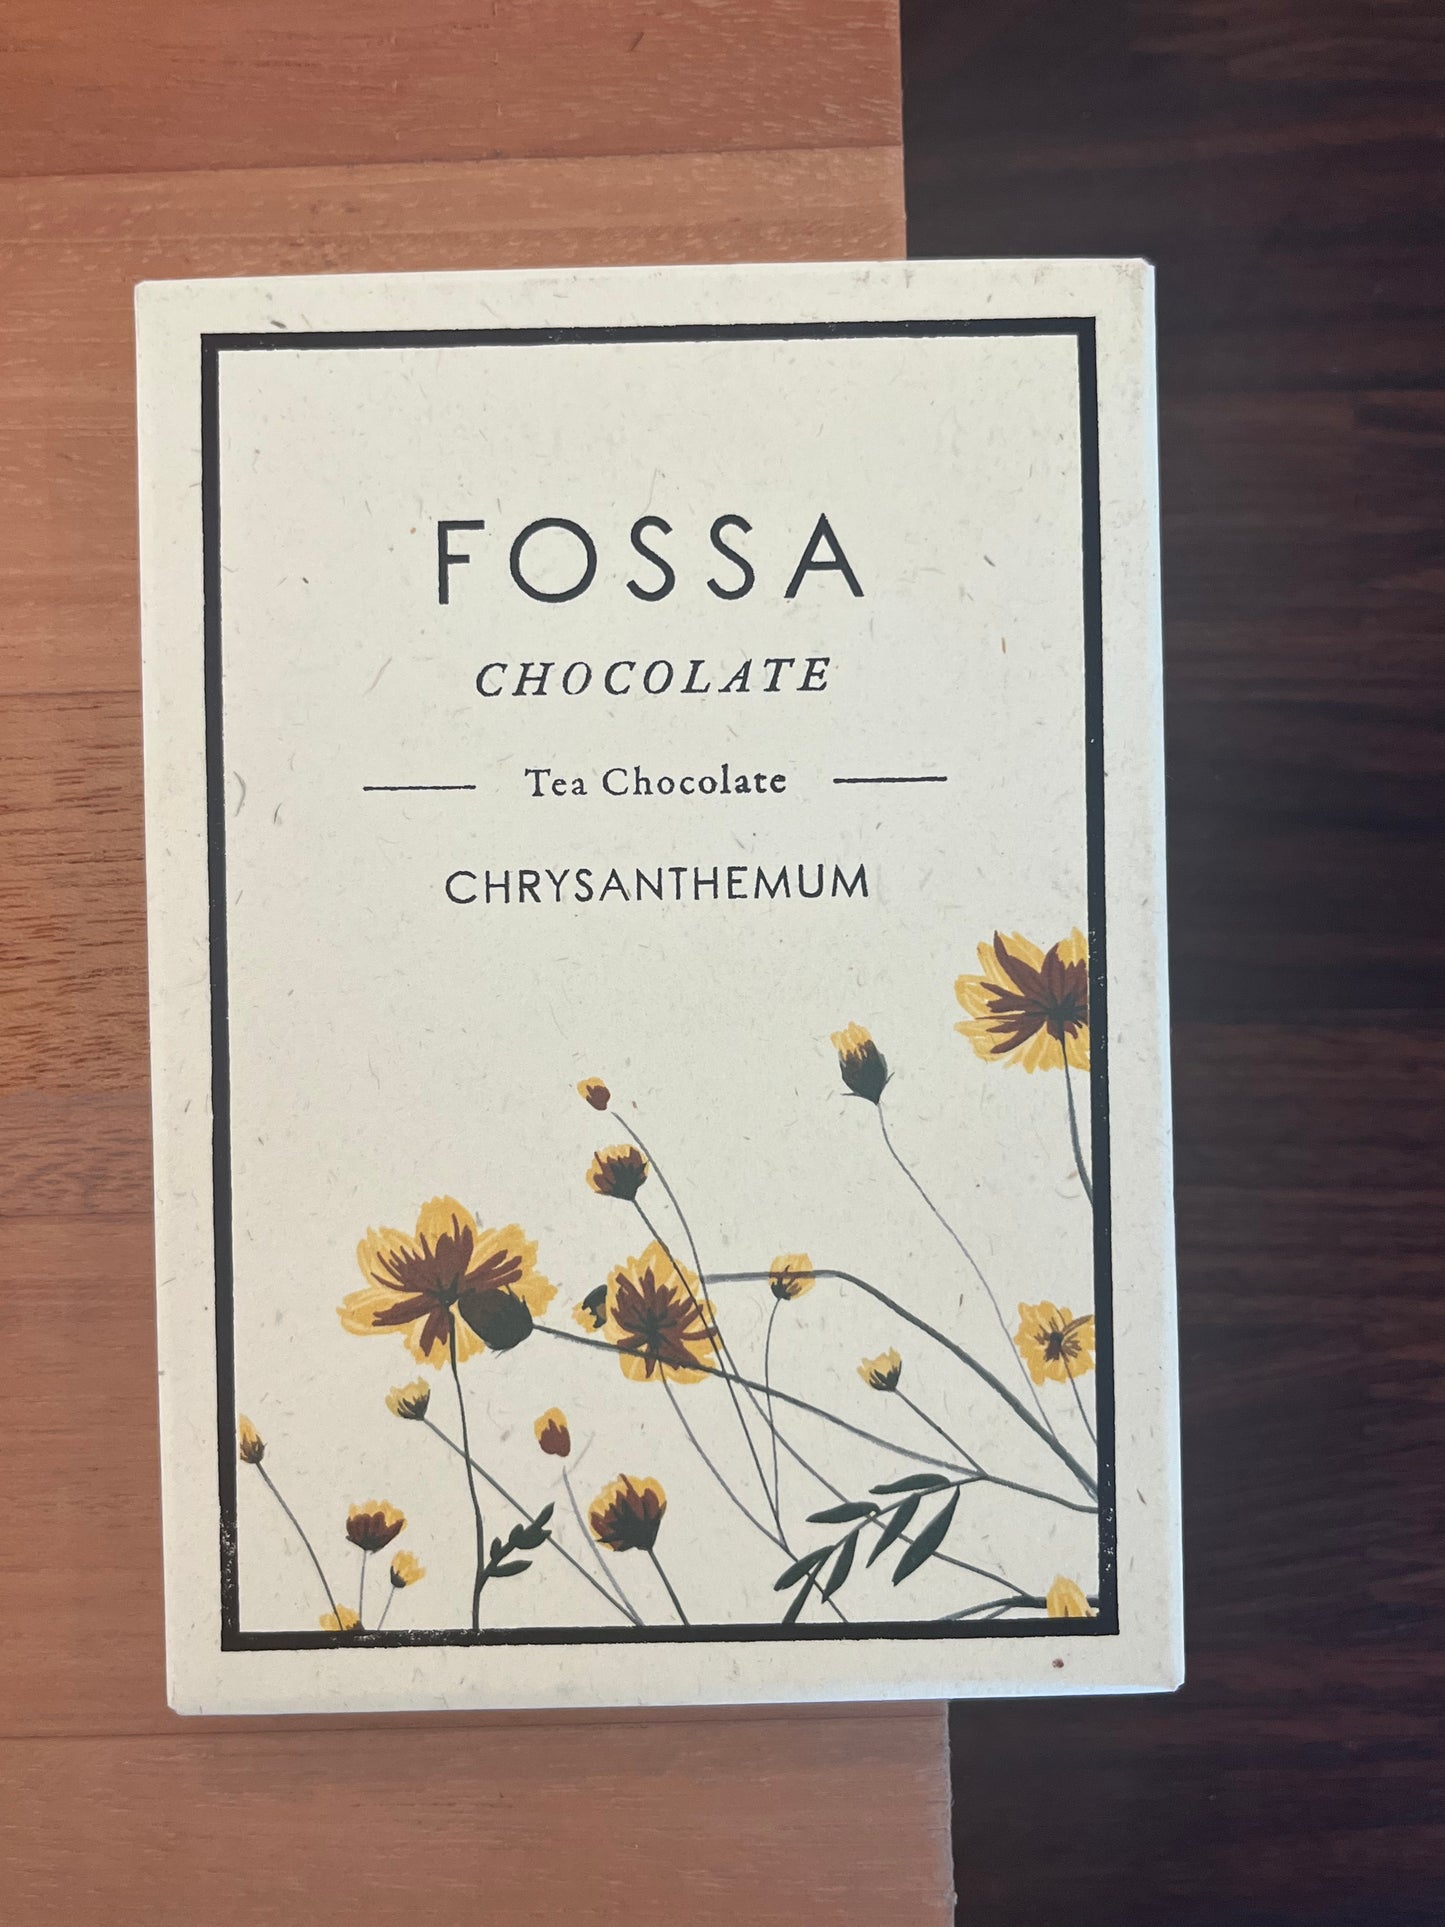 Fossa Chocolate 53% Dark Milk Chocolate chrysanthemum